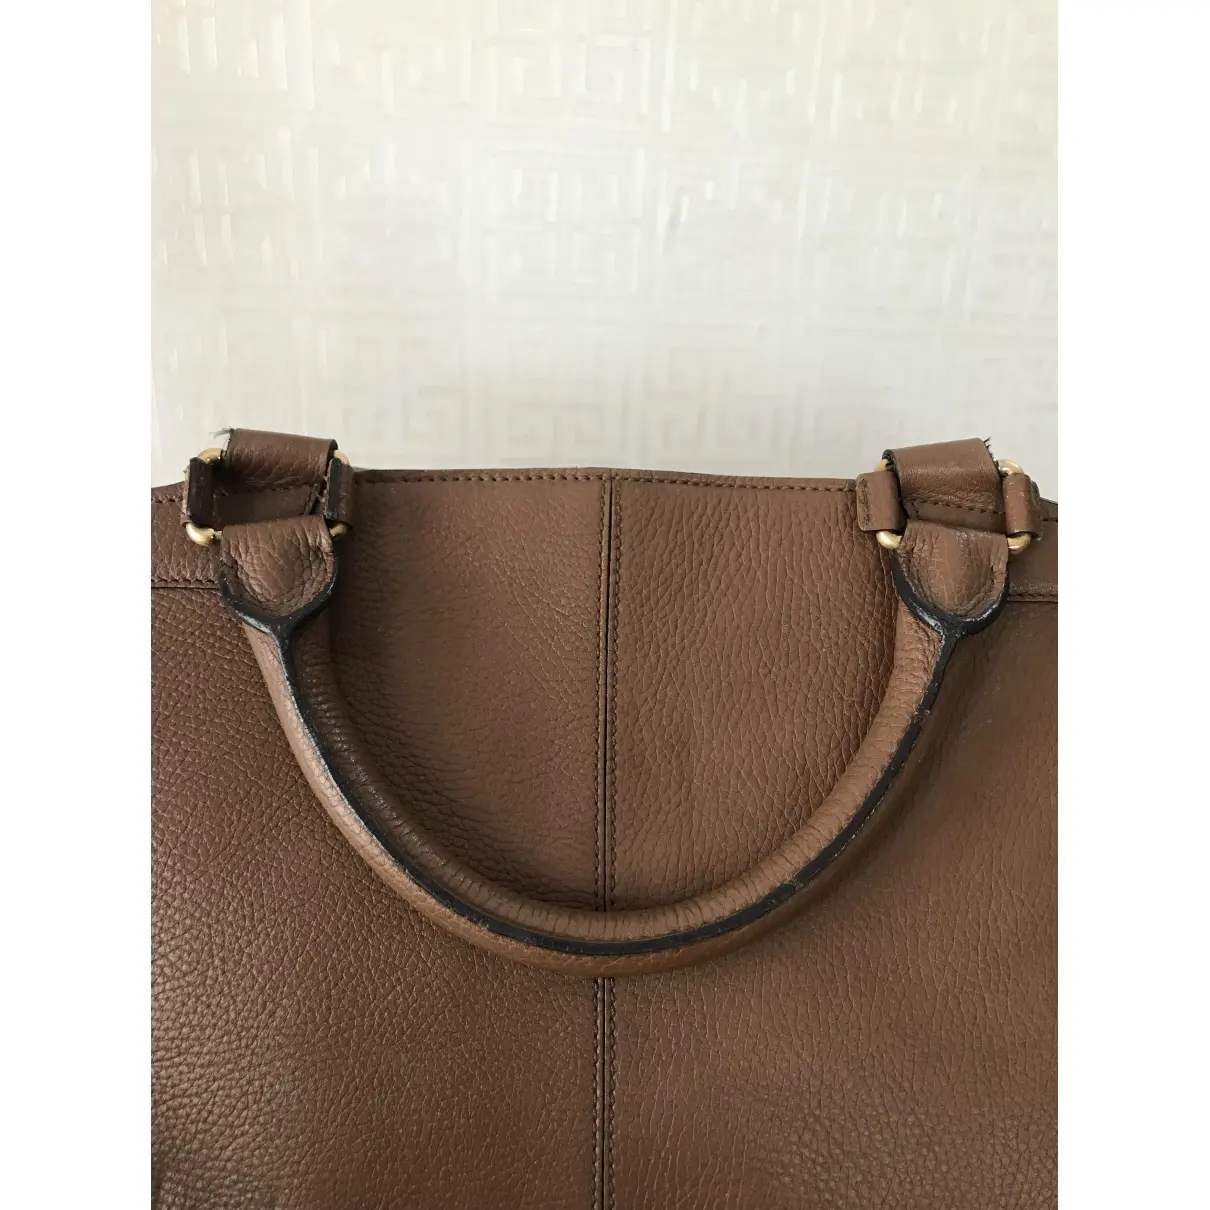 Buy Cartier Leather satchel online